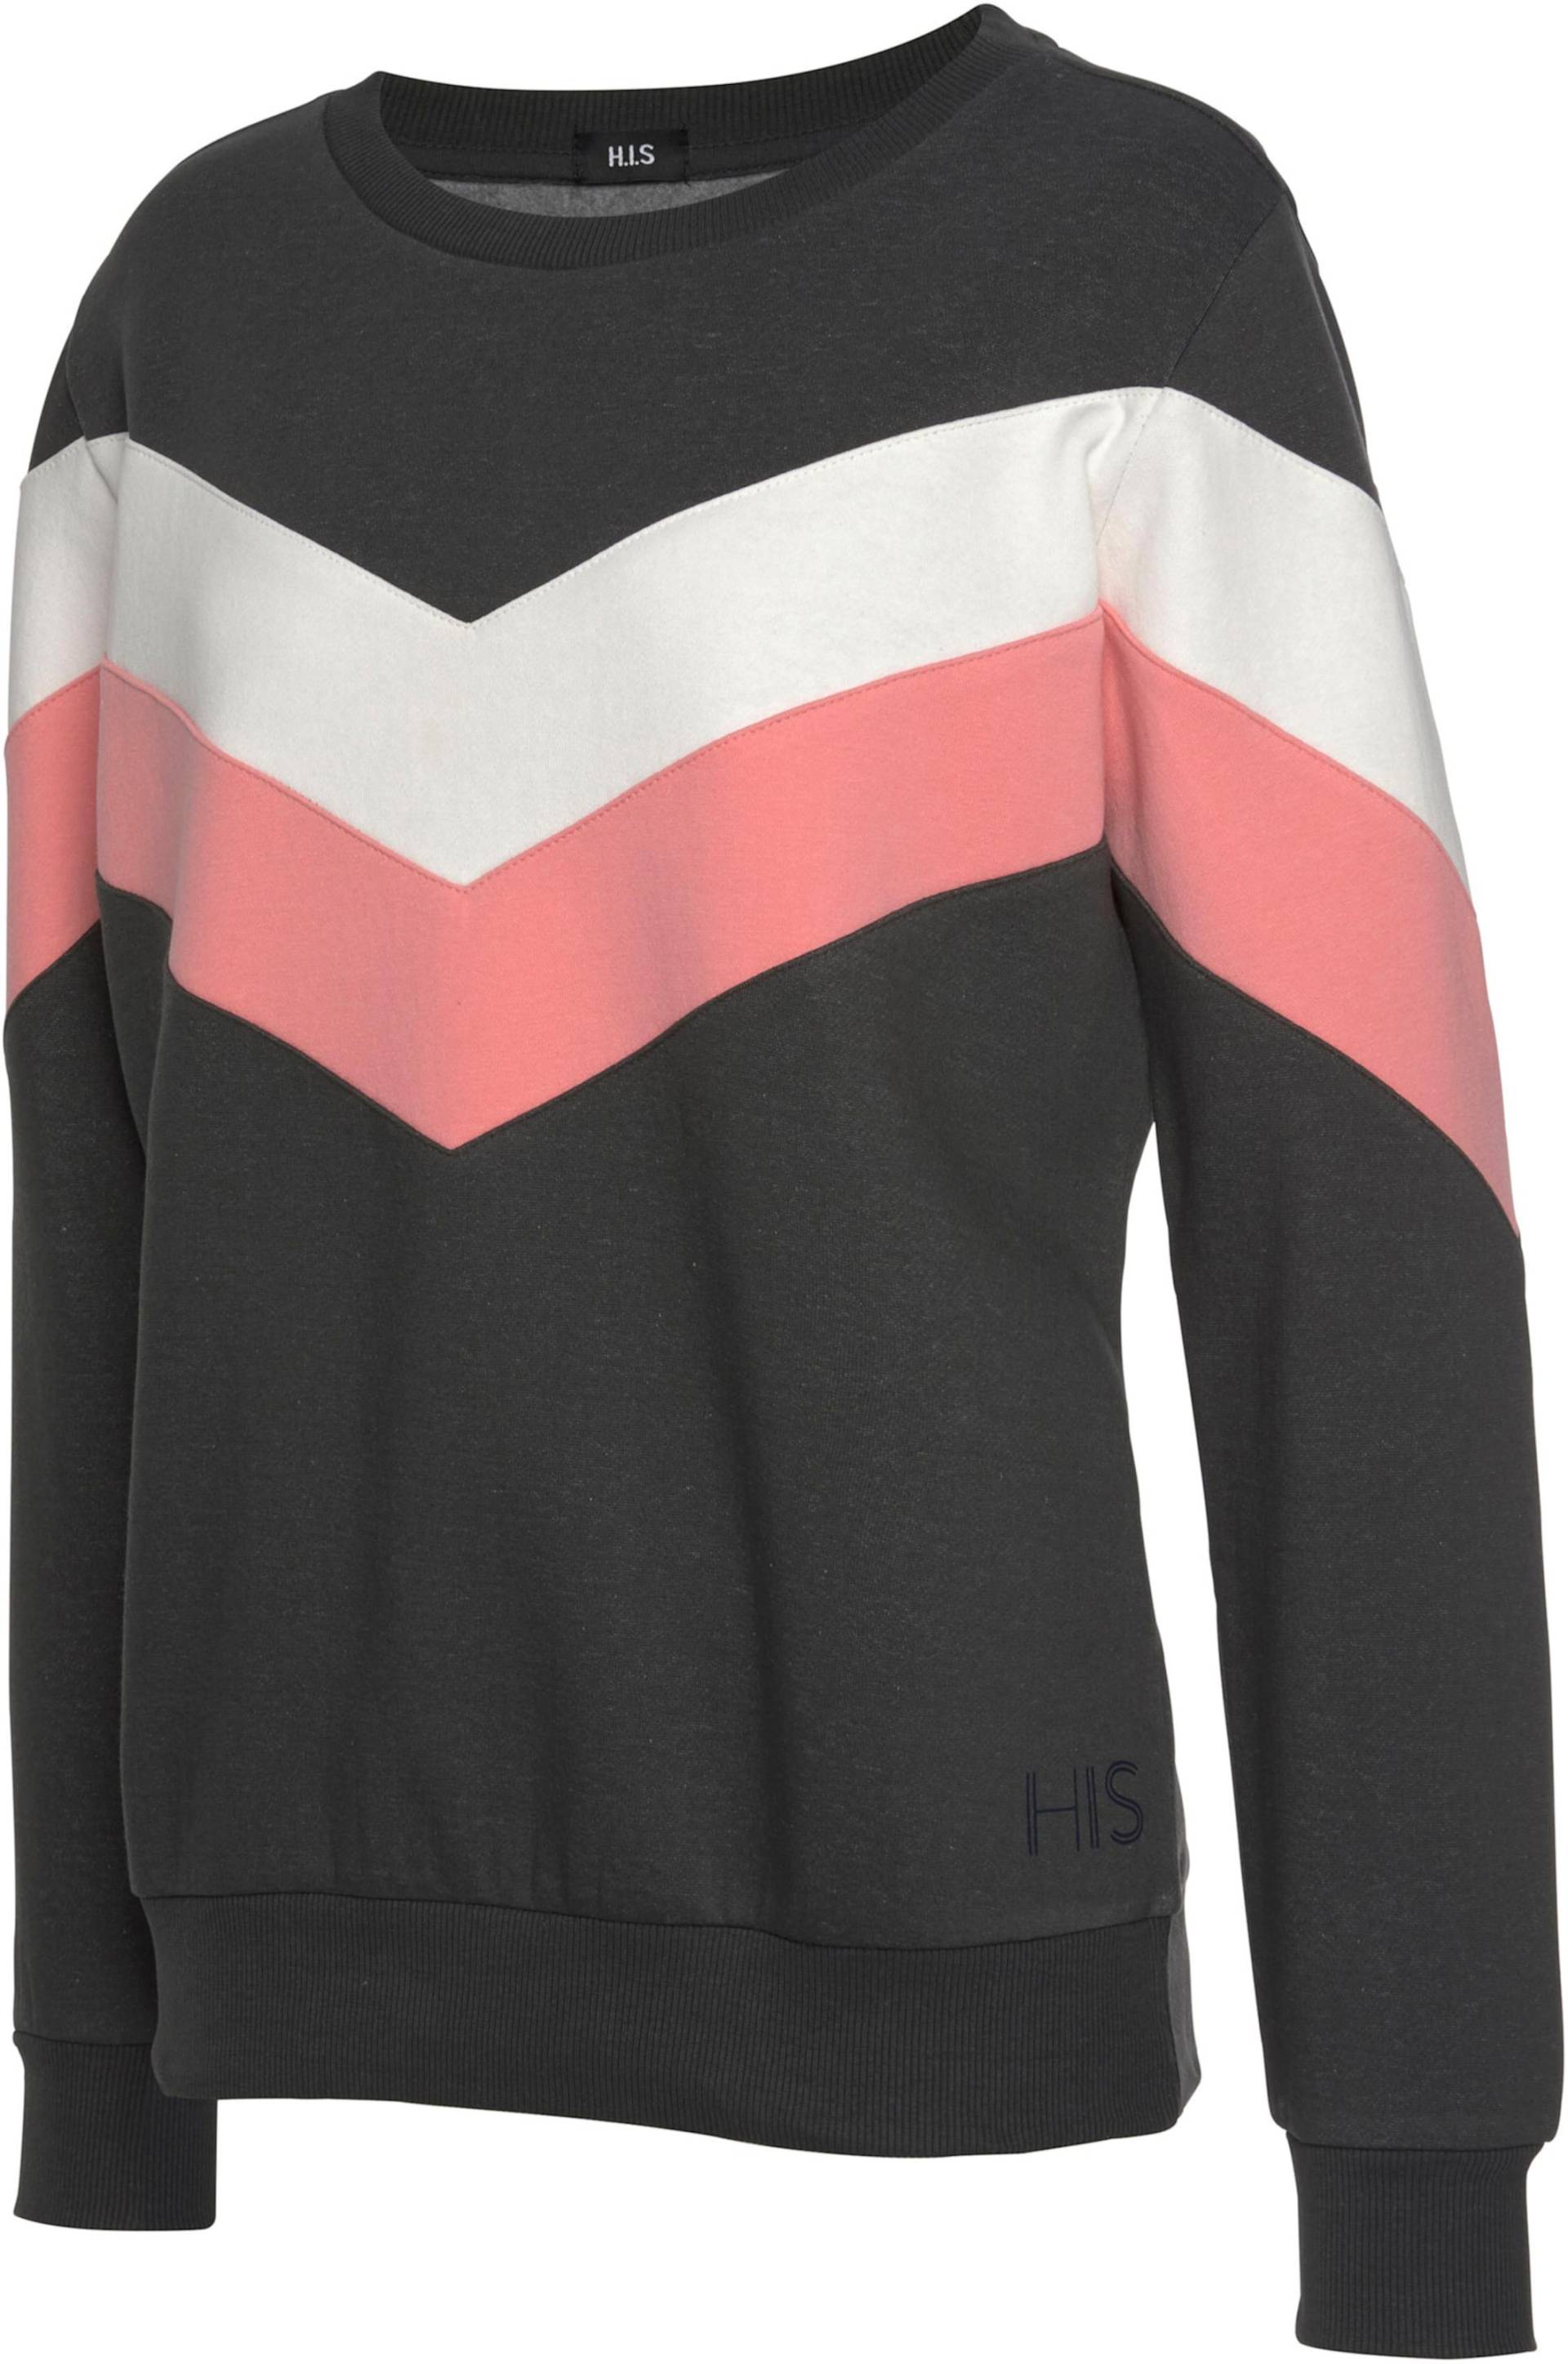 Sweatshirt in anthrazit-rosa-weiß von H.I.S von H.I.S